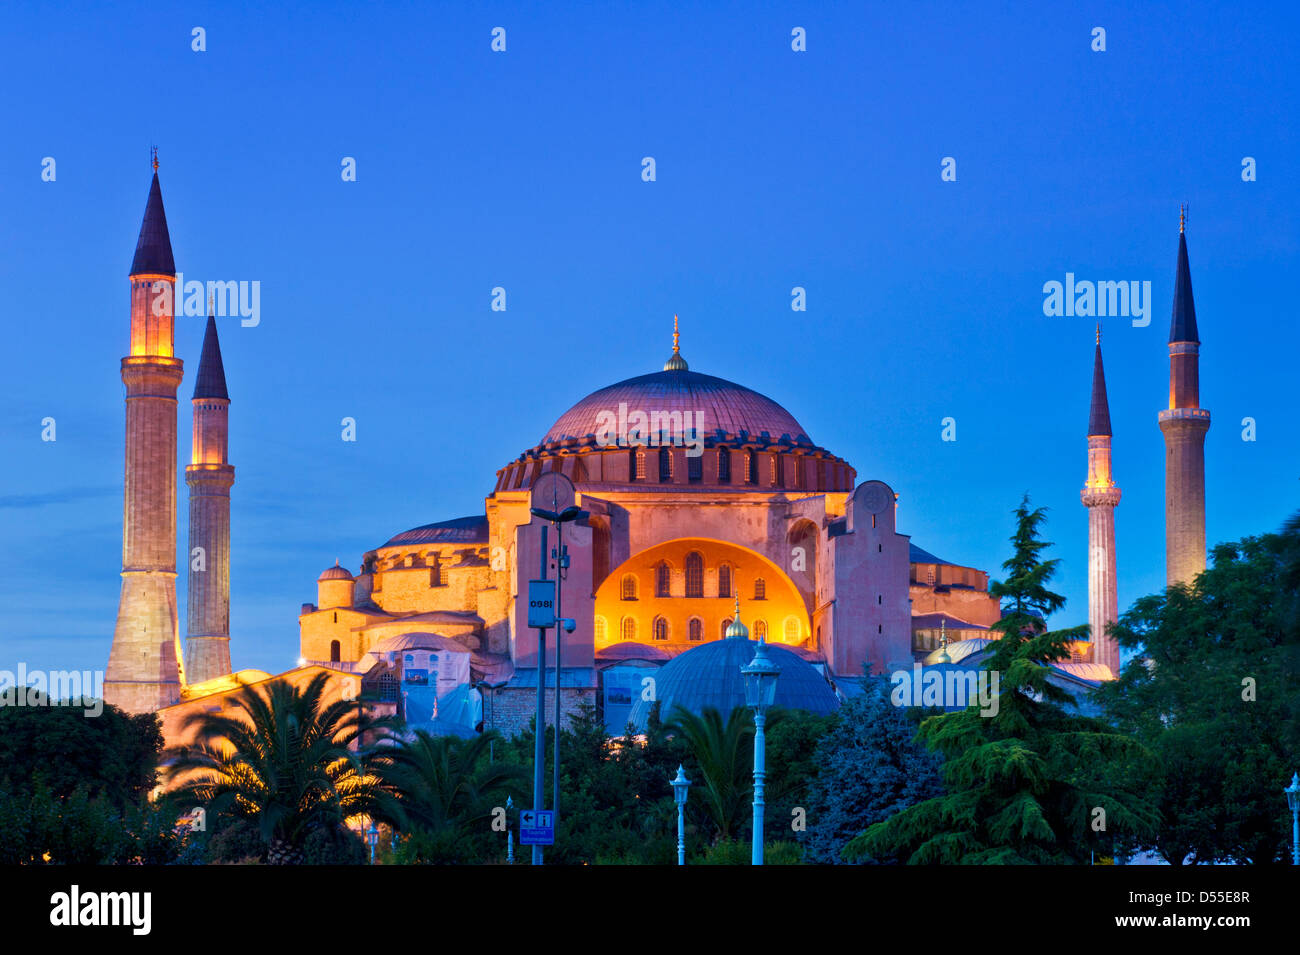 Sainte-sophie ou l'église de la Sainte Sagesse illuminée la nuit, Sultanahmet, Istanbul, Turquie Banque D'Images